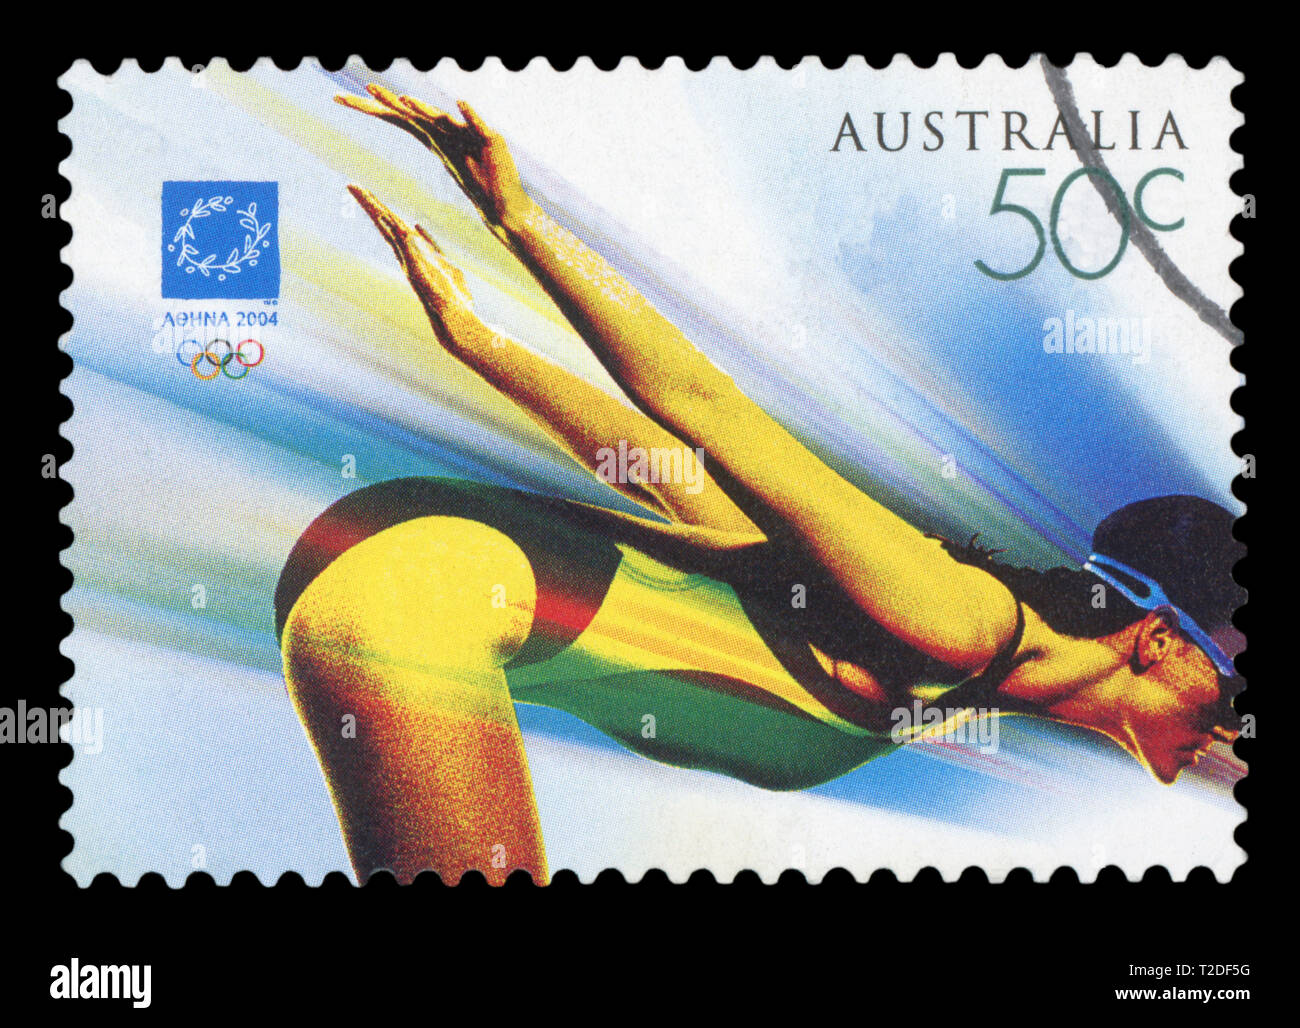 AUSTRALIA - circa 2004: utiliza una estampilla postal de Australia, simbolizando el evento de natación en los Juegos Olímpicos de Verano de Atenas 2004, circa 2004. Foto de stock